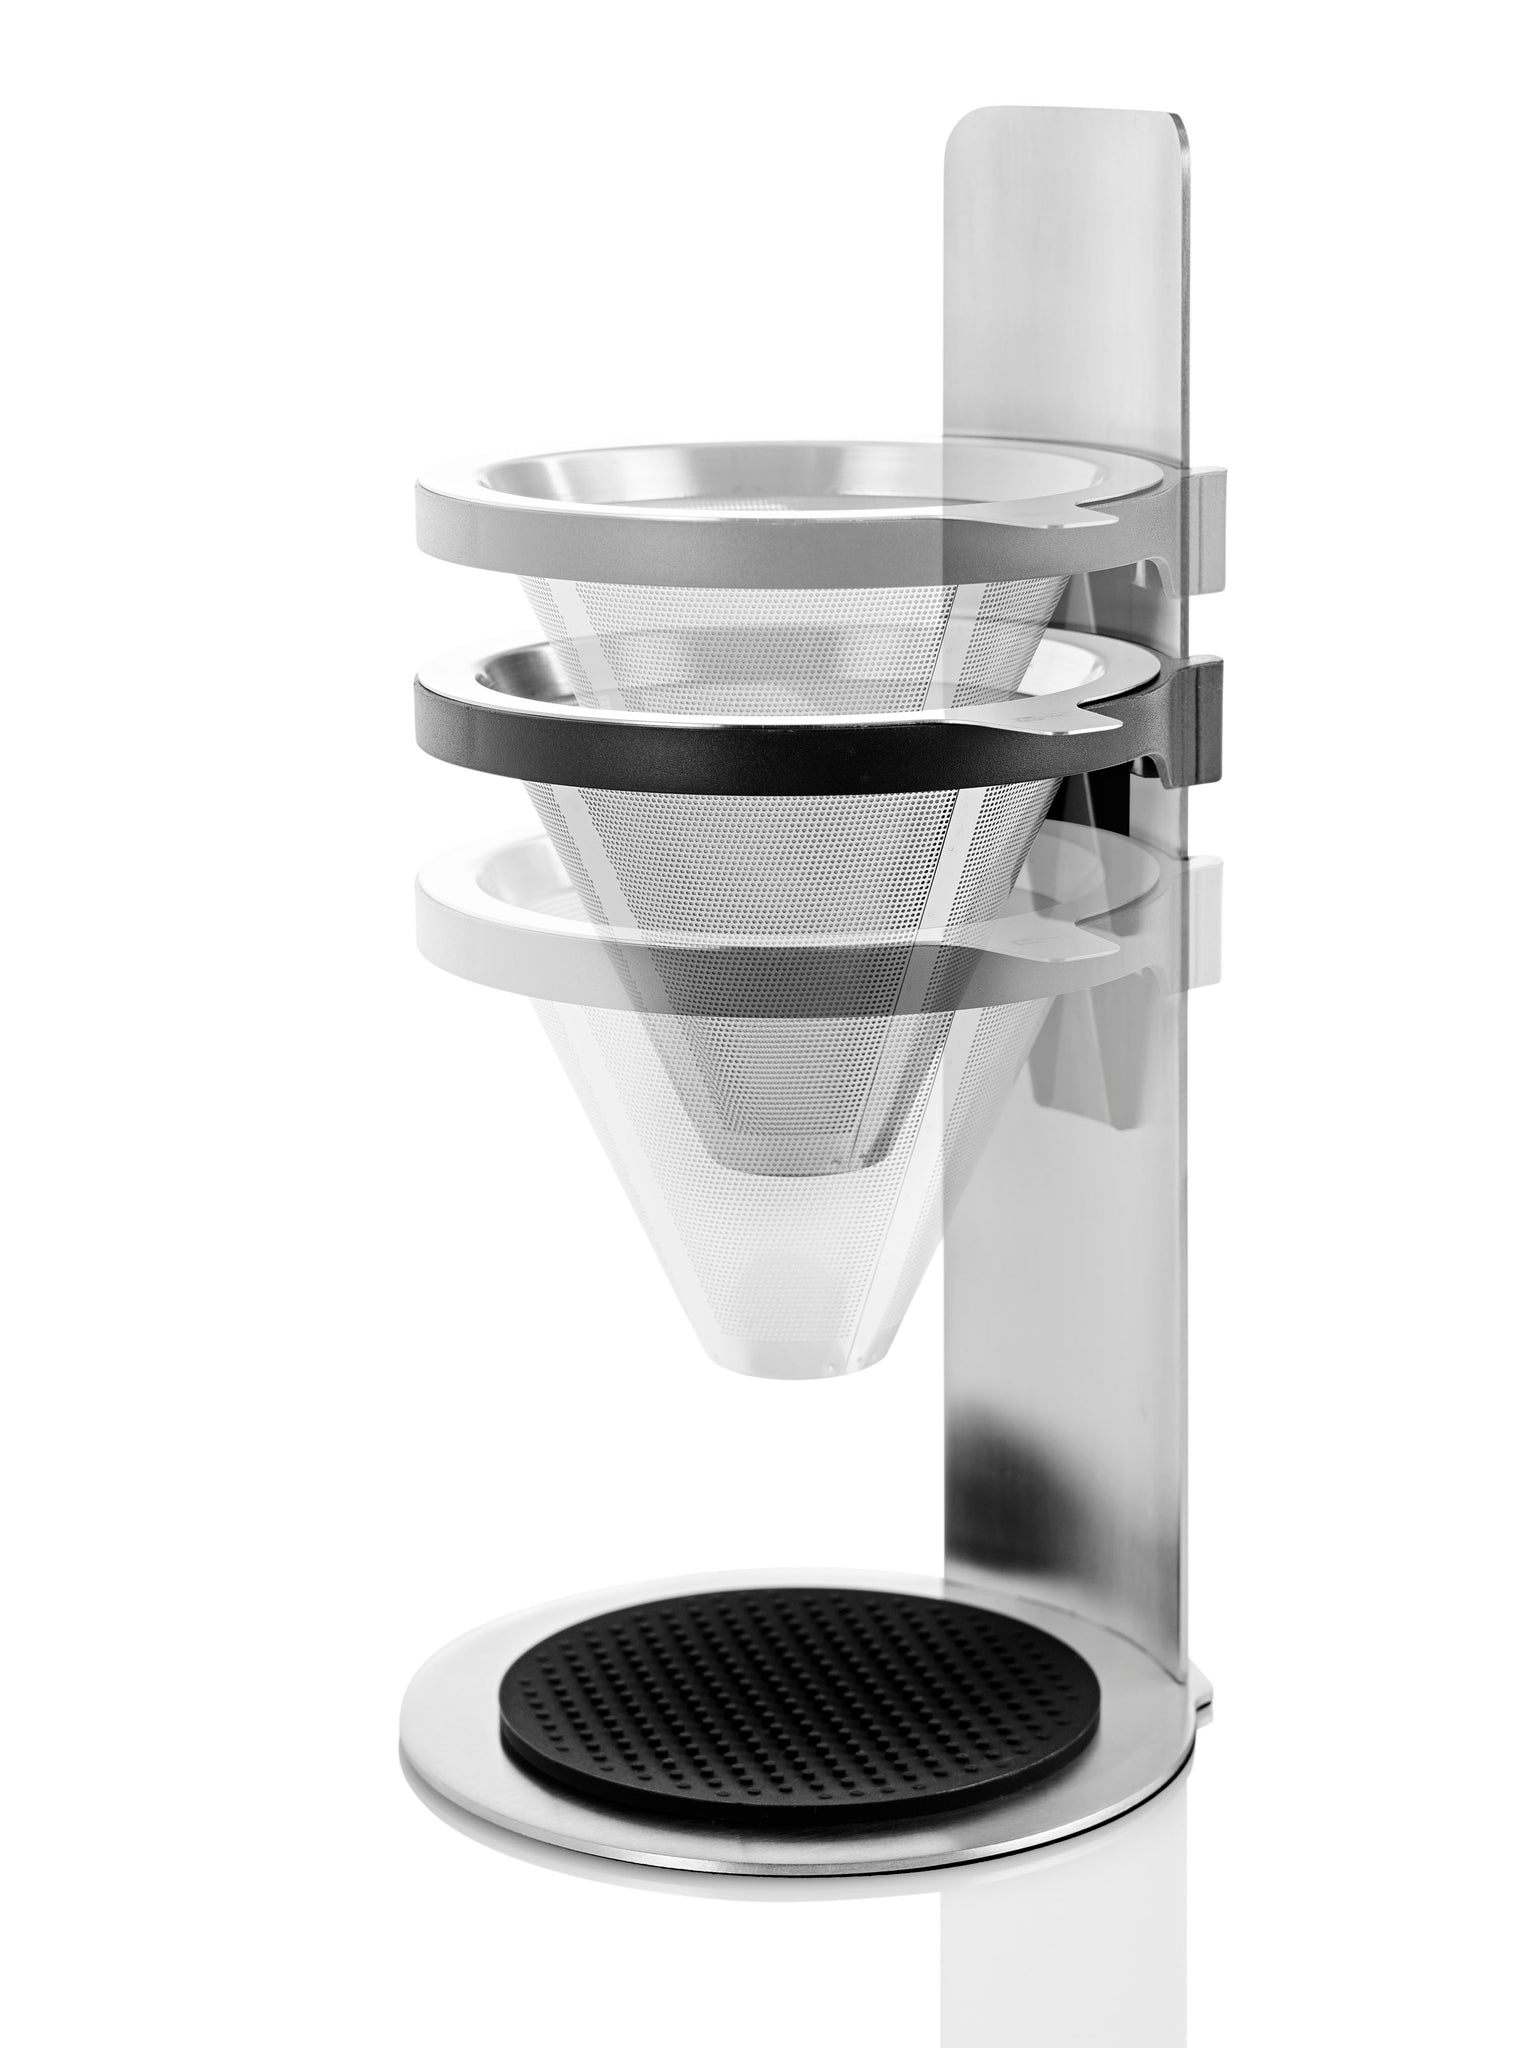 全品免税 AdHoc Mr. Brew ポアオーバーコーヒーメーカー シングルサーブコーヒーメーカー 2層フィルター付き ステンレススチー コーヒー、ティー用品  ENTEIDRICOCAMPANO